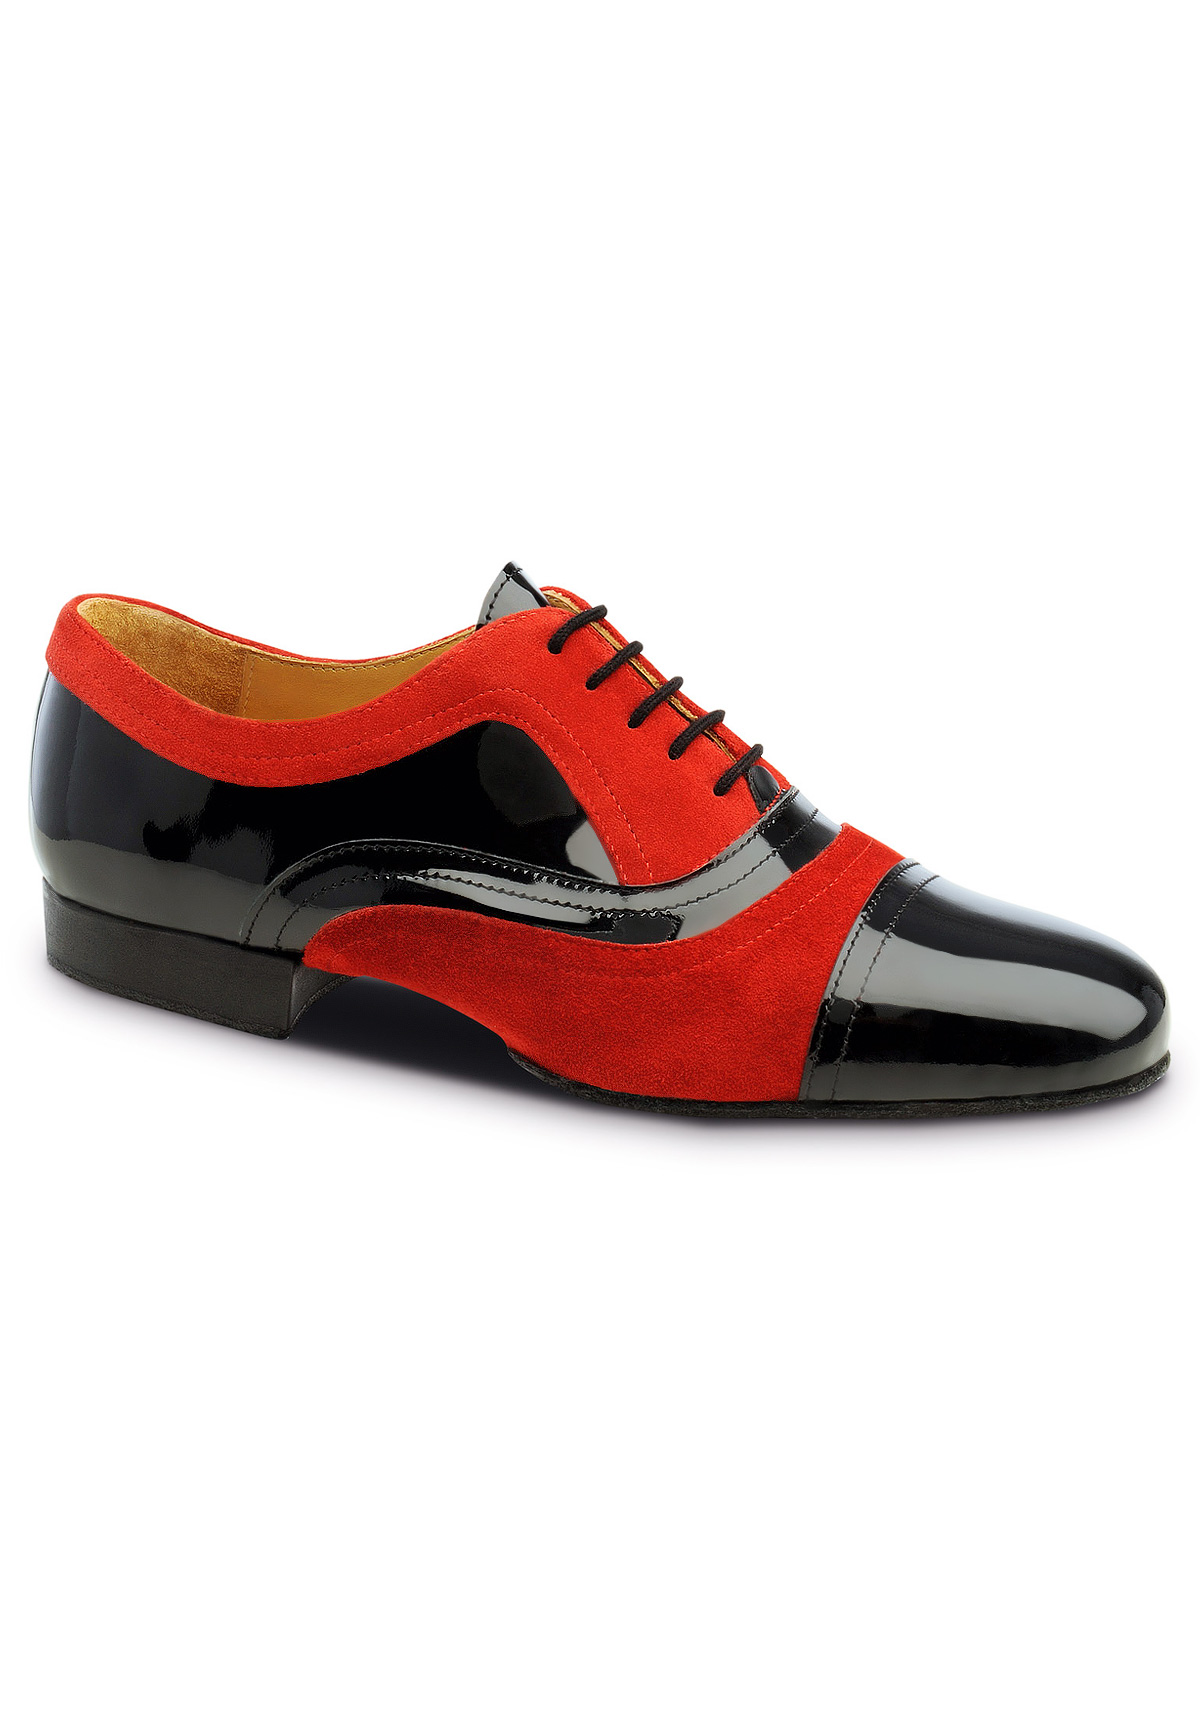 Dance Sneaker Split Sole for Unisex Comfort | Stylish Dance Shoes – Adore  Dance Shoes